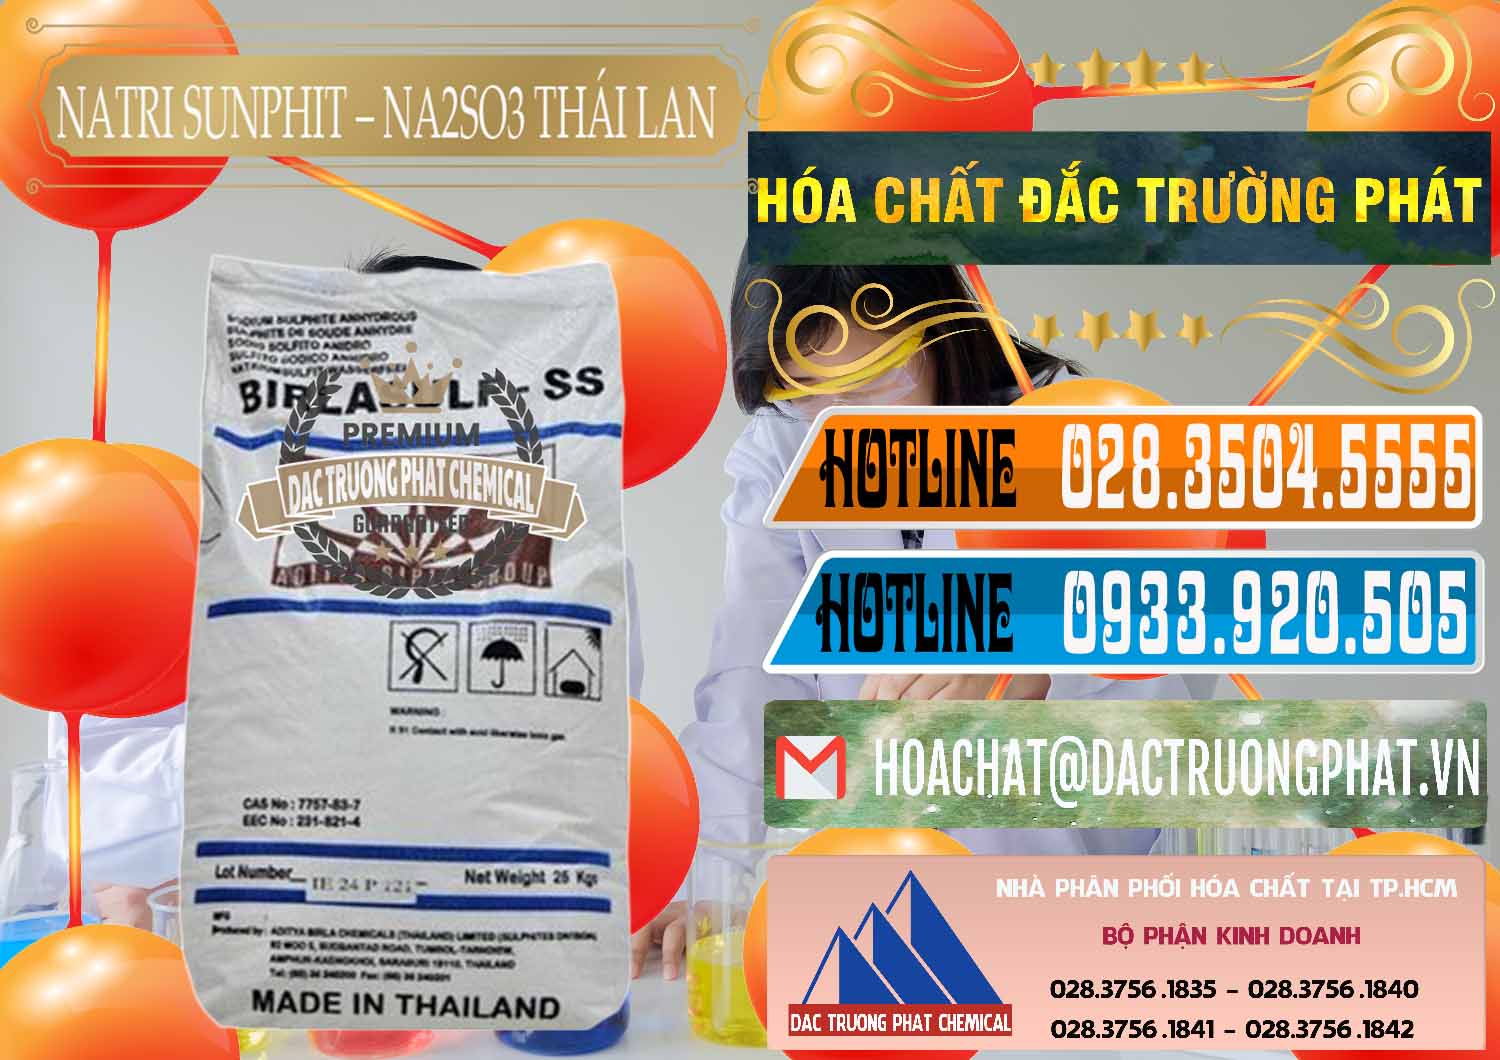 Cty bán & cung cấp Natri Sunphit - NA2SO3 Thái Lan - 0105 - Nhà phân phối & nhập khẩu hóa chất tại TP.HCM - stmp.net